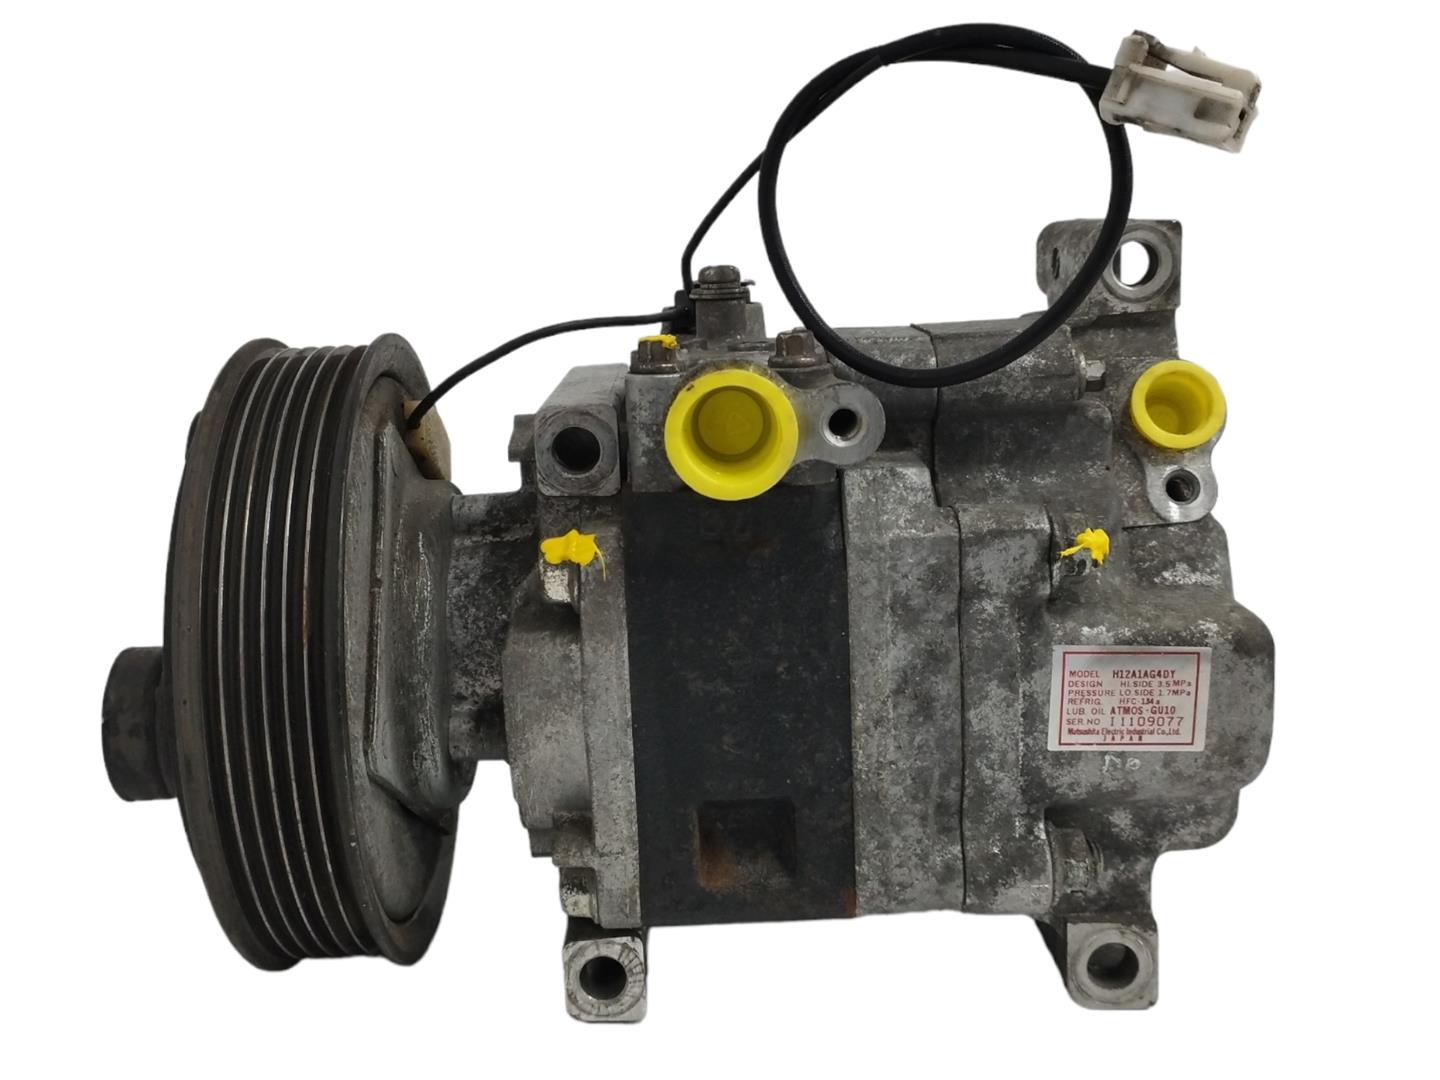 MAZDA 3 BK (2003-2009) Air Condition Pump H12A1AG4DY, HFC134A 22283027